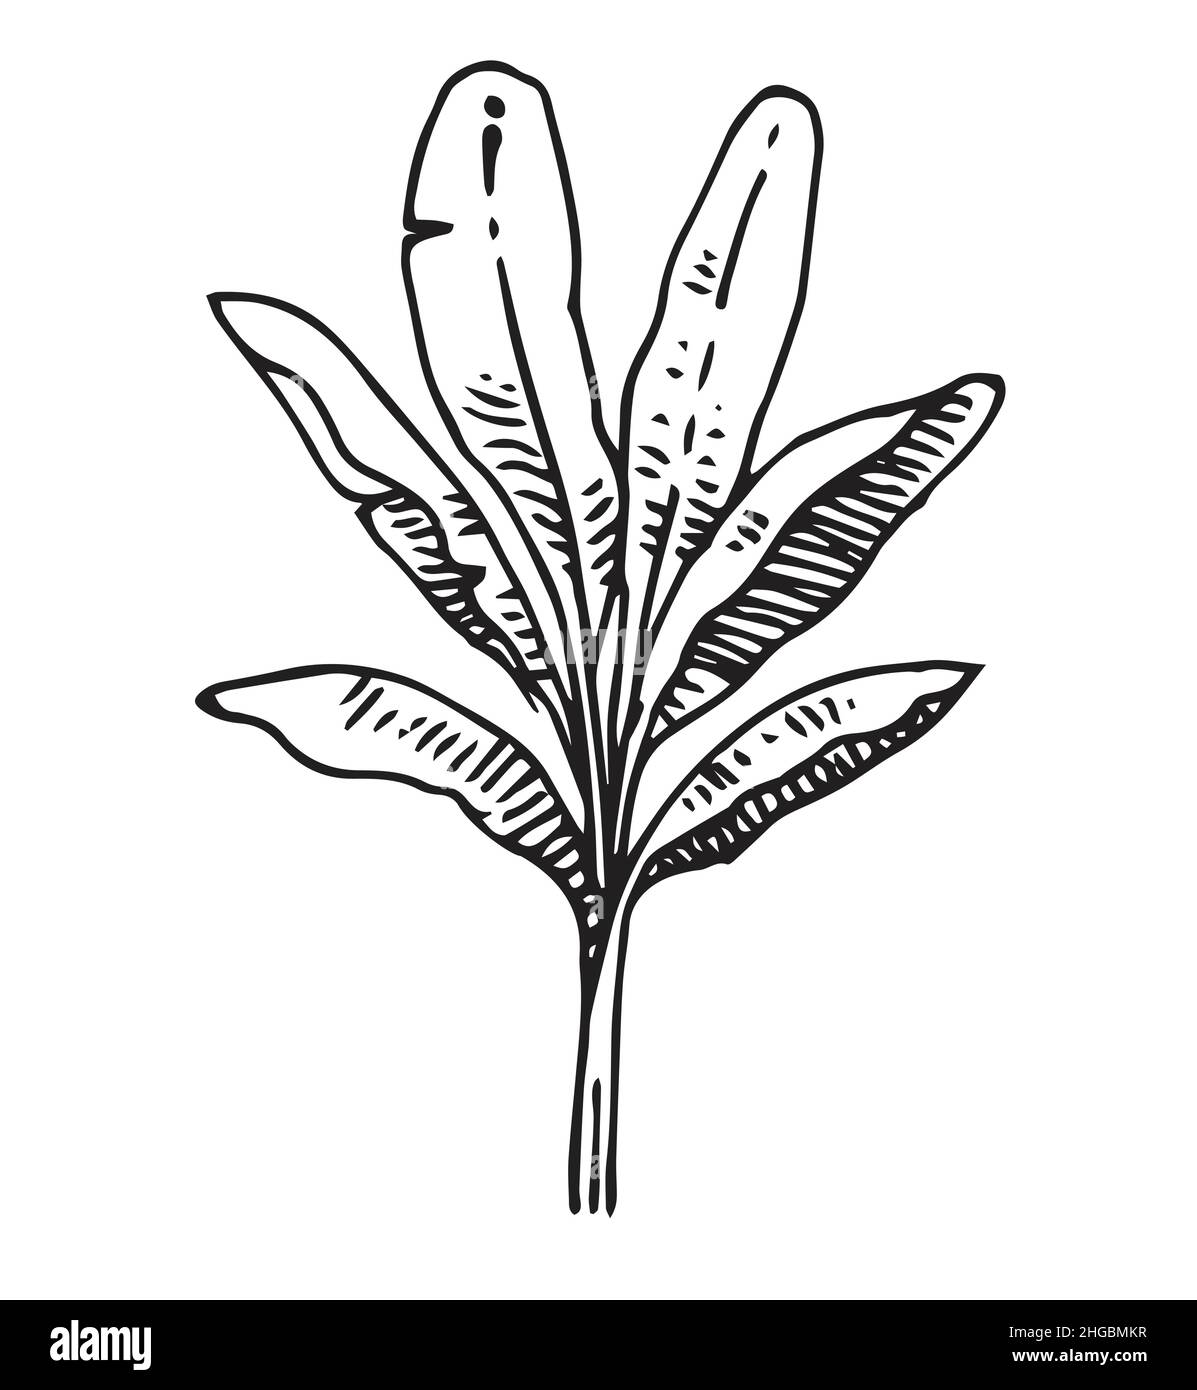 Hoher Bananenpalmenstrauch. Tropische Pflanze. Handzeichnung Umriss. Skizze exotischer Pflanzen. Isoliert auf weißem Hintergrund. Vektor Stock Vektor